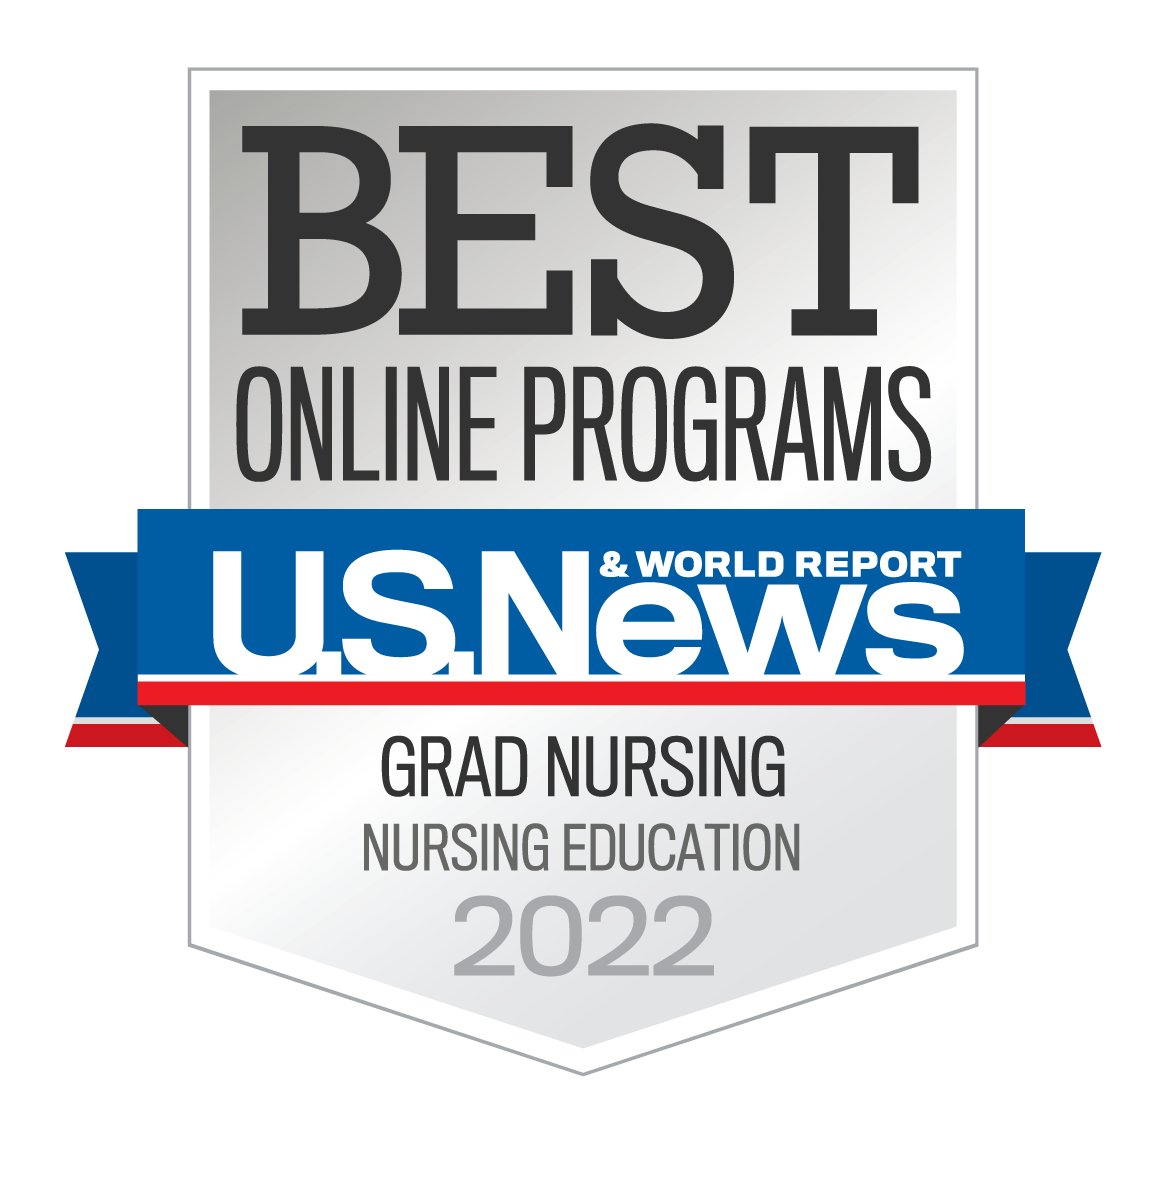 US News and World Report - best grad nursing in nursing education 2022